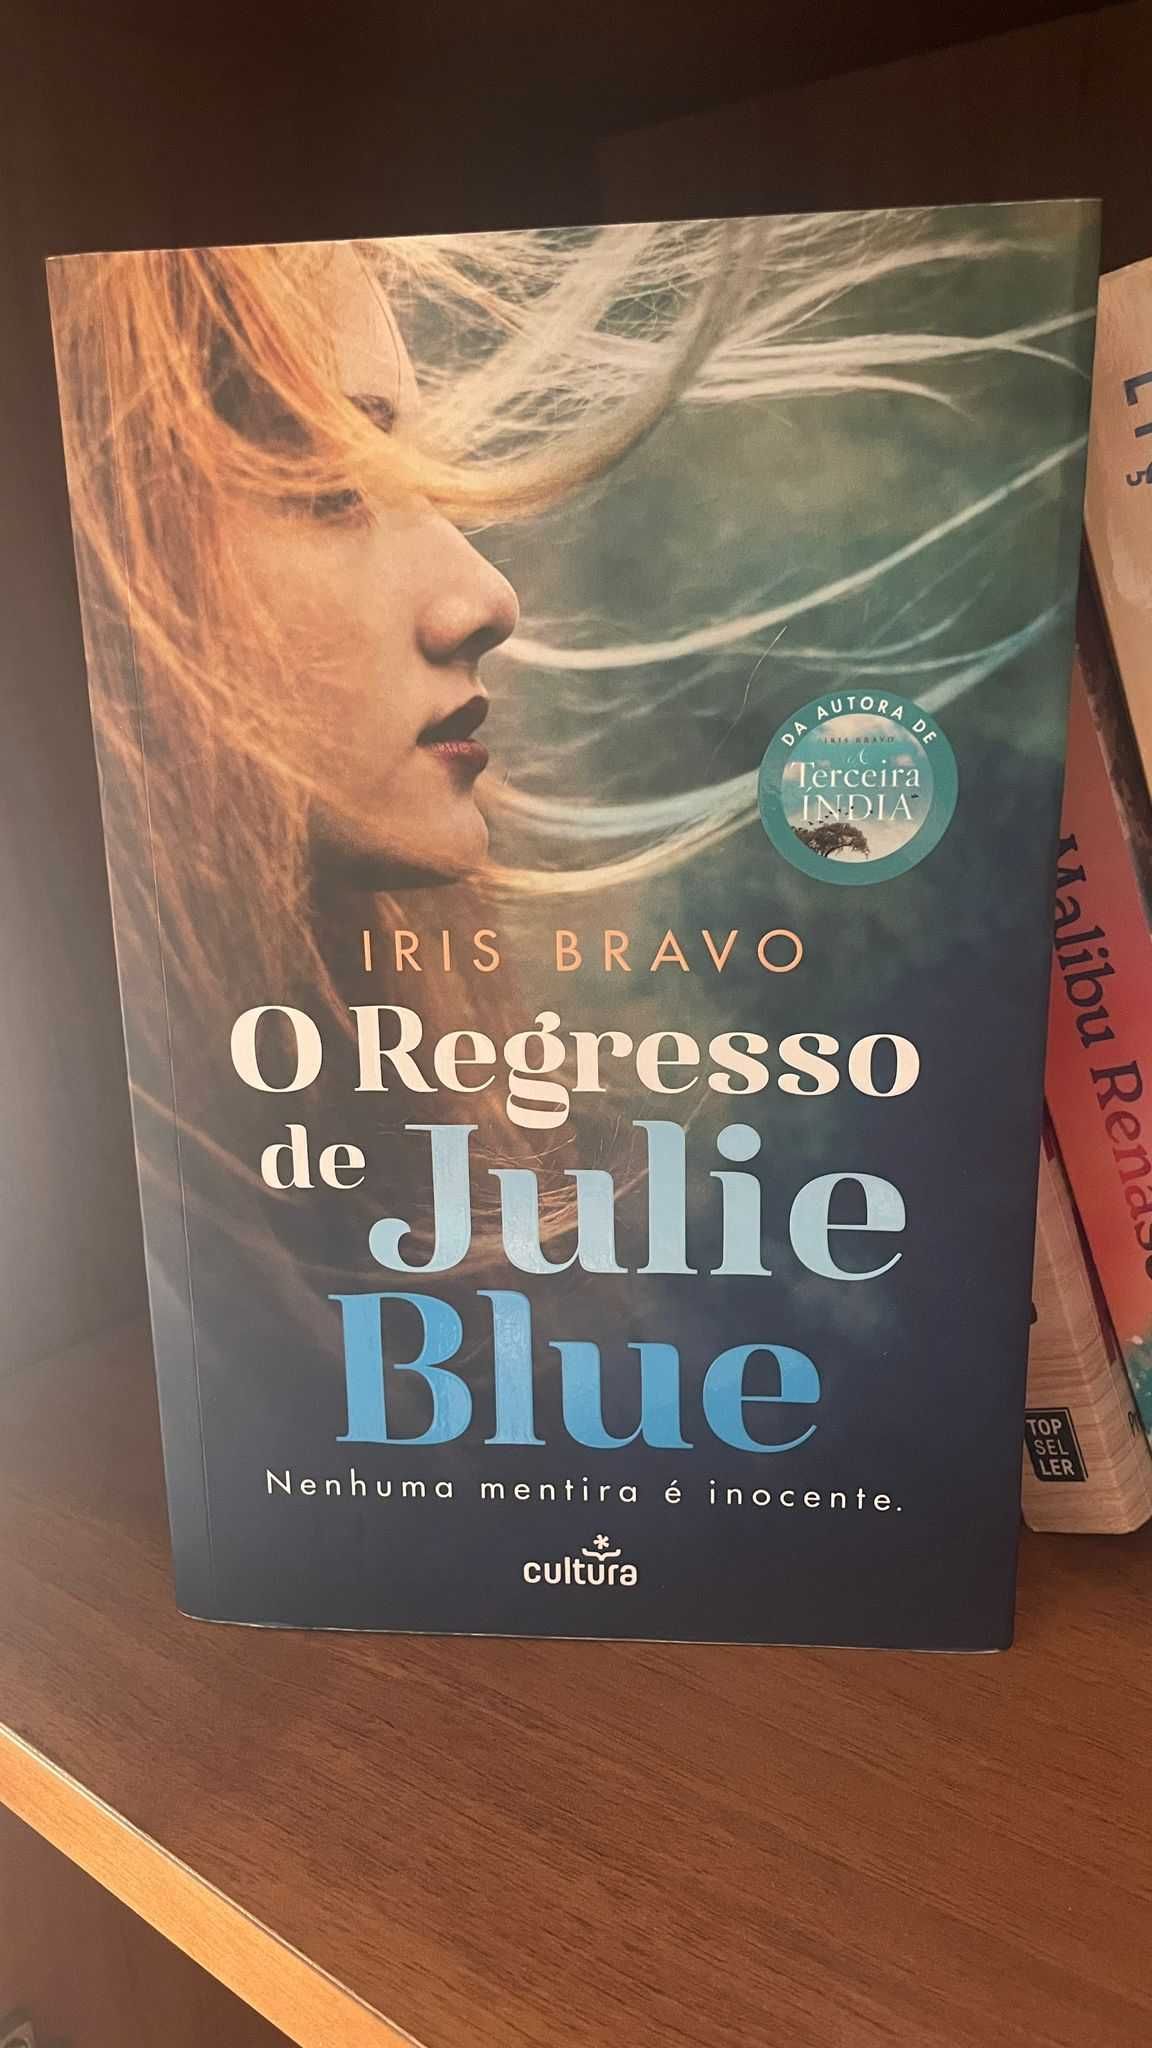 Livro "O regresso de Julie Blue" - portes incluidos